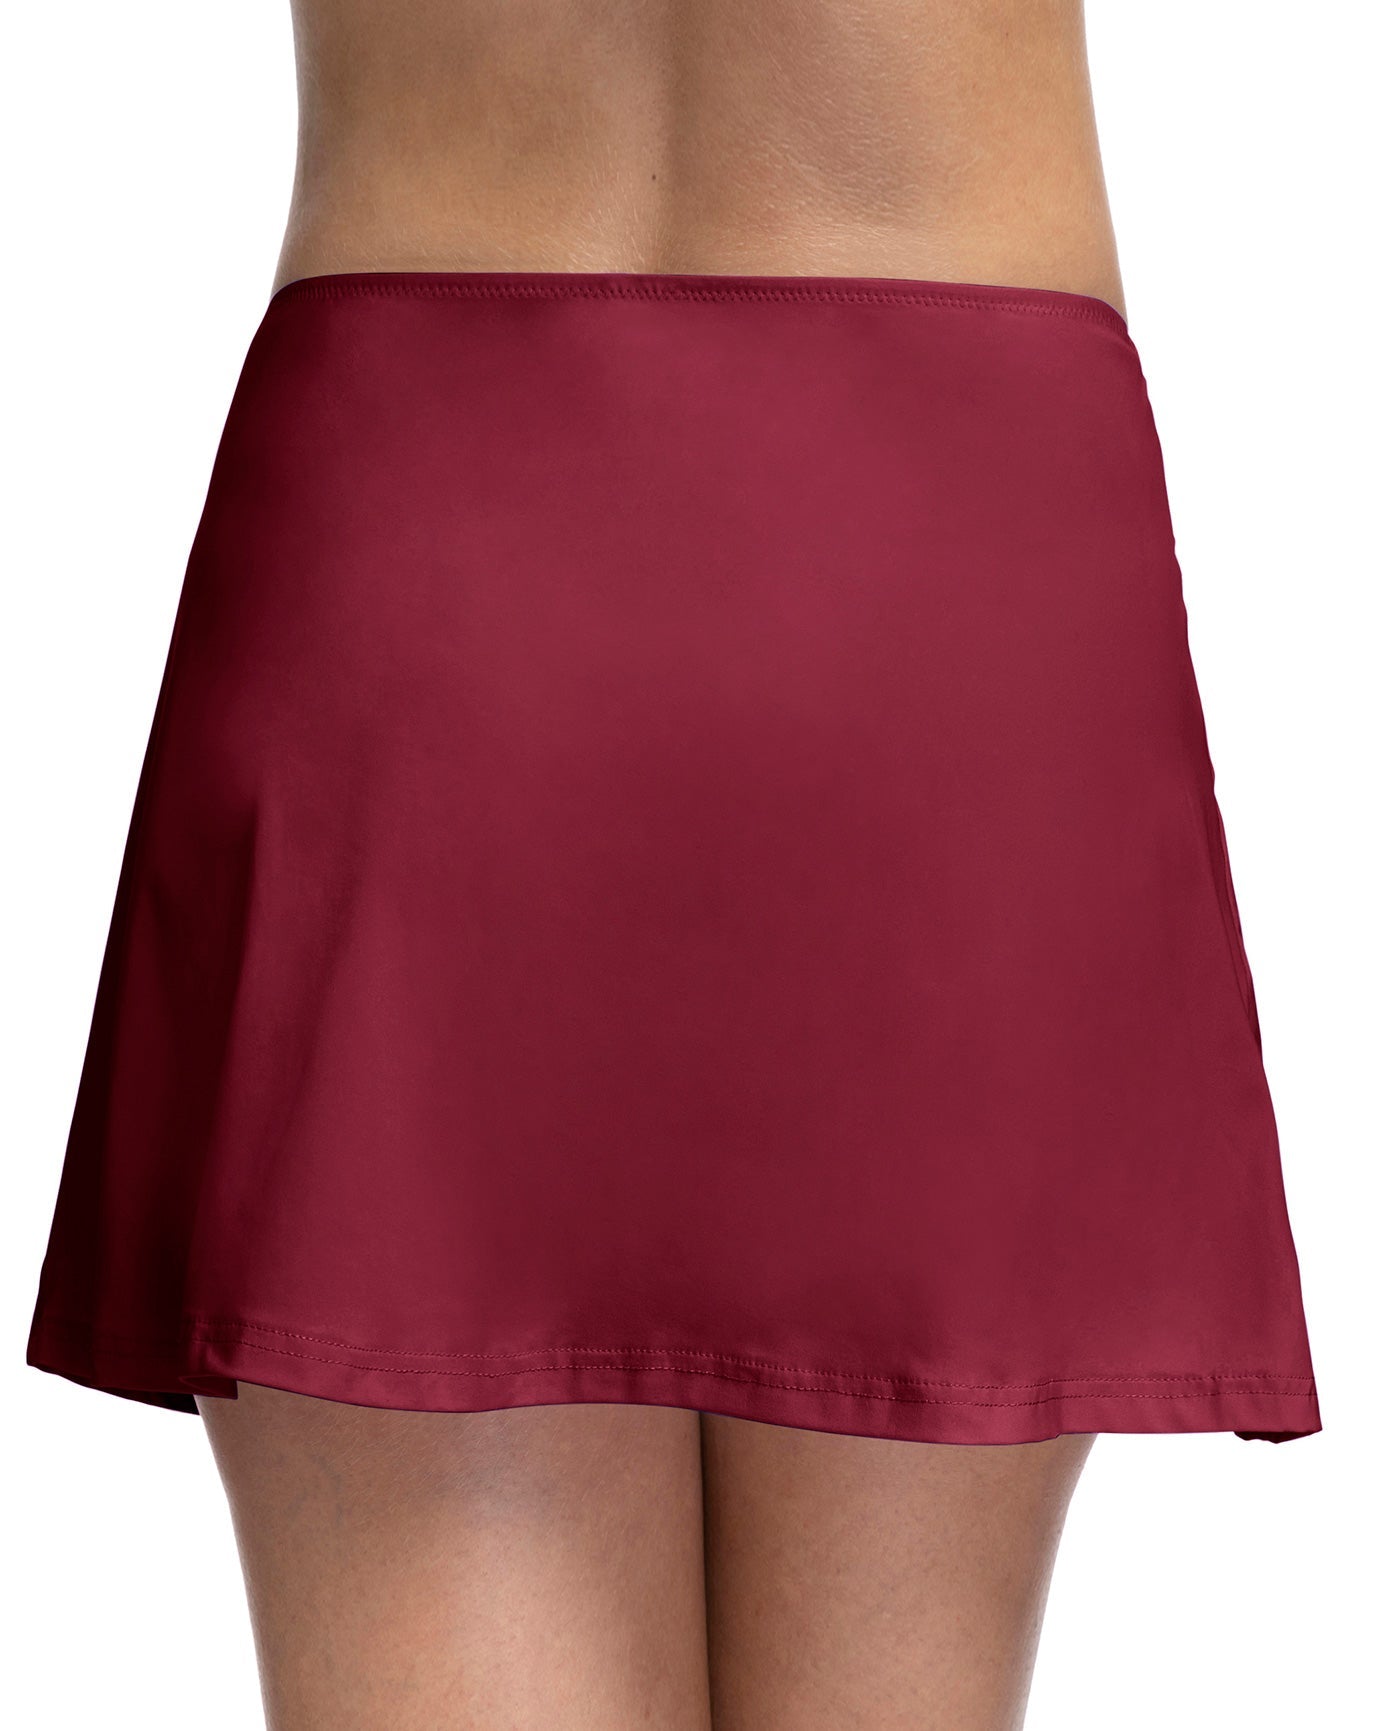 Back View Of Profile By Gottex Tutti Frutti Cover Up Skirt | PROFILE TUTTI FRUTTI MERLOT